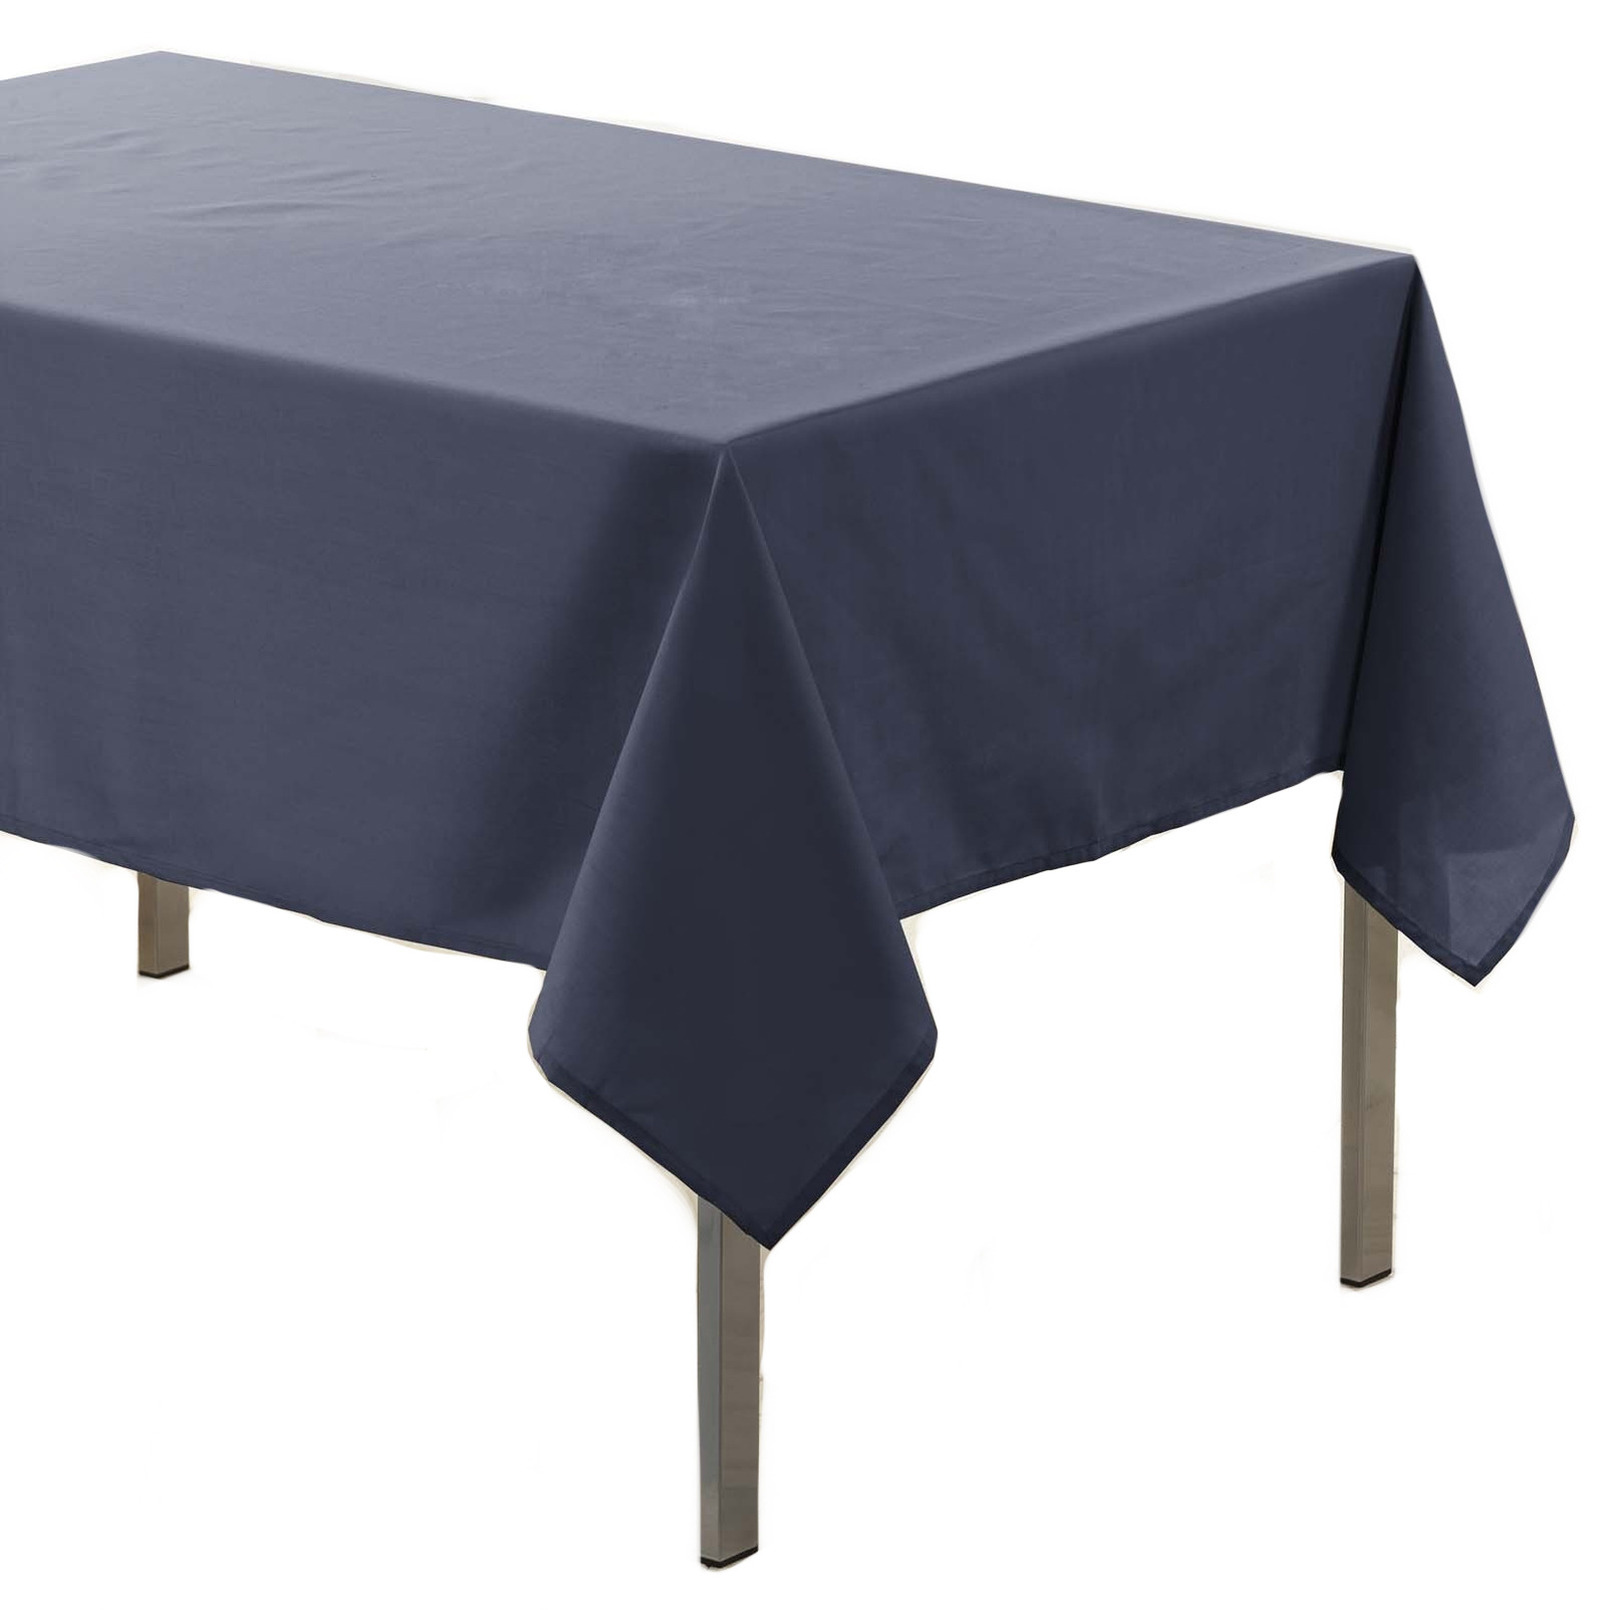 Antraciet grijze tafelkleden-tafellakens 140 x 250 cm rechthoekig van stof